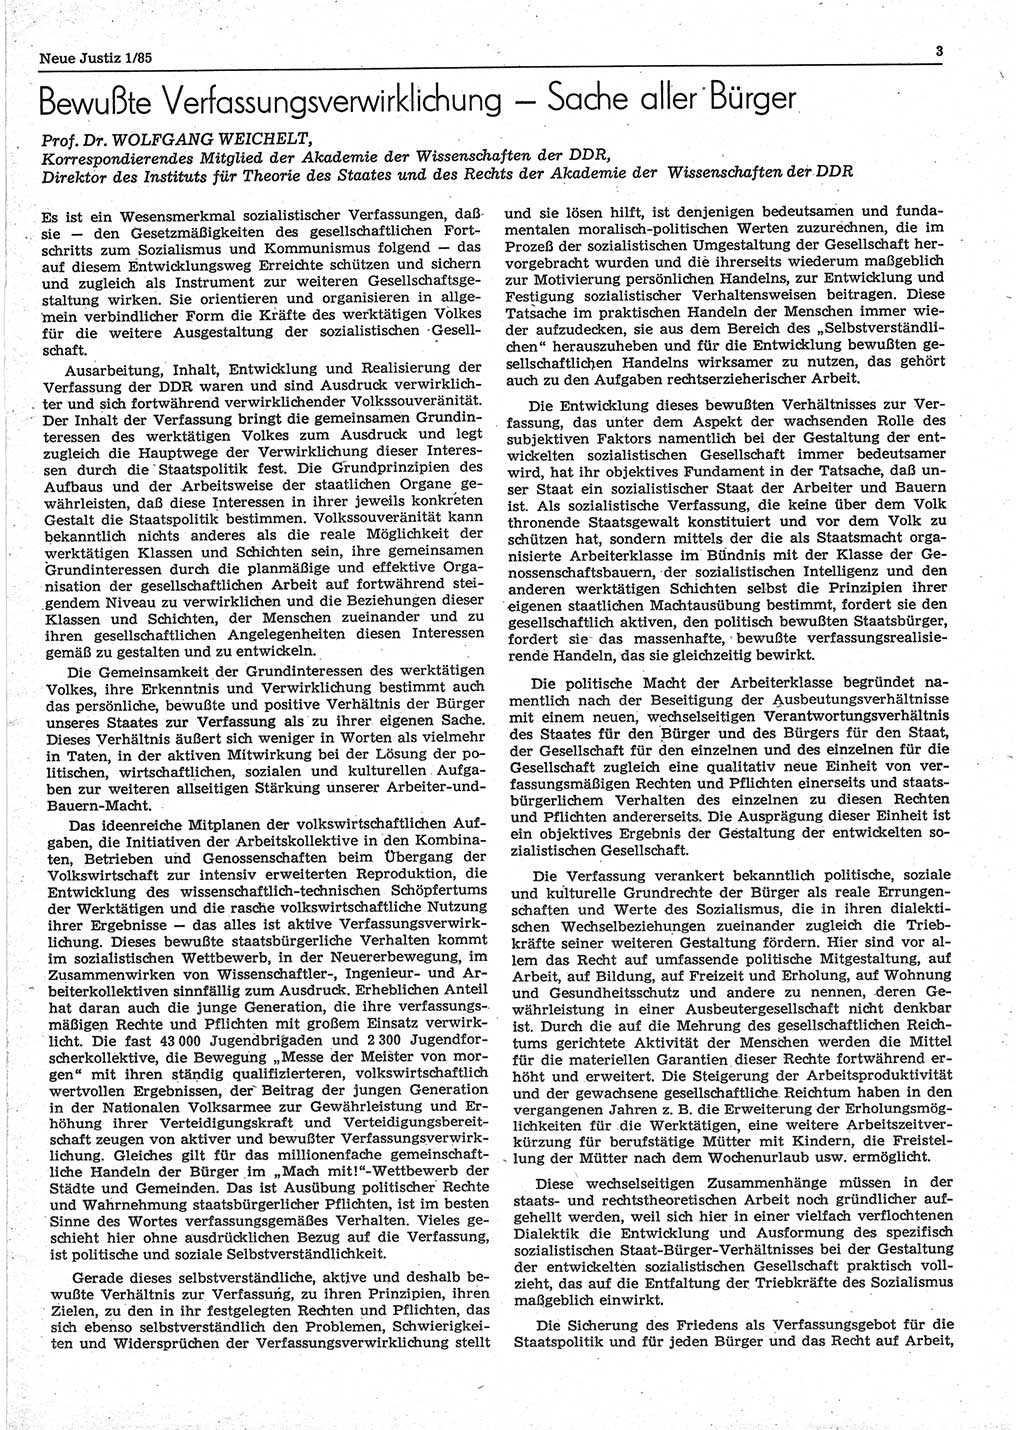 Neue Justiz (NJ), Zeitschrift für sozialistisches Recht und Gesetzlichkeit [Deutsche Demokratische Republik (DDR)], 39. Jahrgang 1985, Seite 3 (NJ DDR 1985, S. 3)